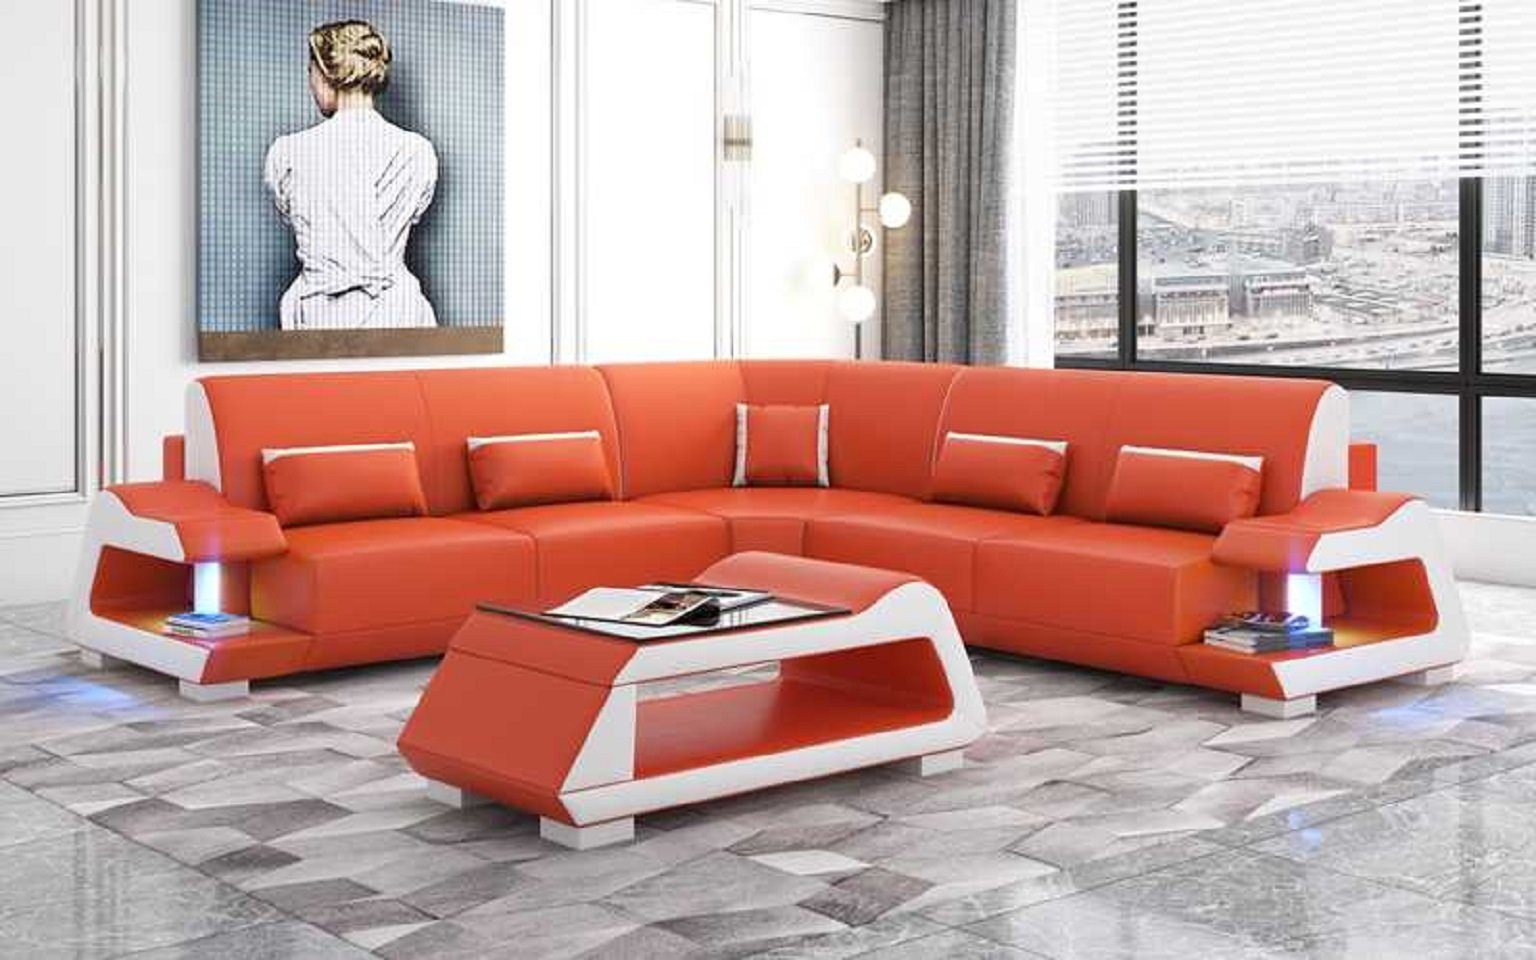 JVmoebel Orange Eckgarnitur Sofas, Europe Form Made Wohnzimmer Sofa Luxus in L Ecksofa 3 Ecksofa Teile,